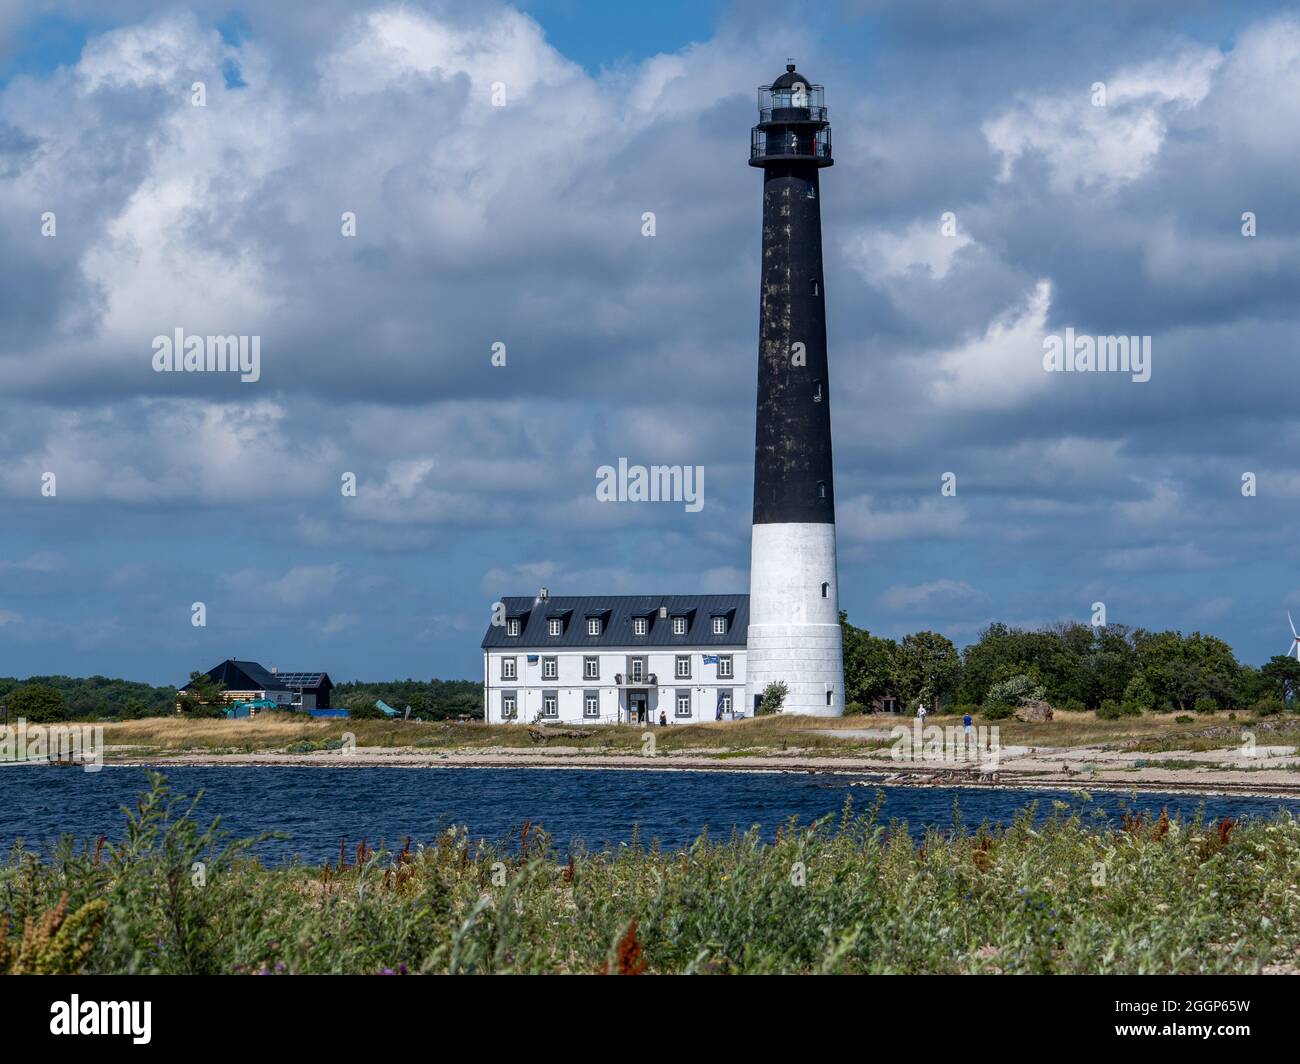 Estland, Insel Saaremaa. Am Ufer des Sõrve-Horns erhebt sich ein weißer Leuchtturm hoch über dem Boden. Sommer, sonnendurchflutete Aussicht auf das Meer des Leuchtturms Stockfoto